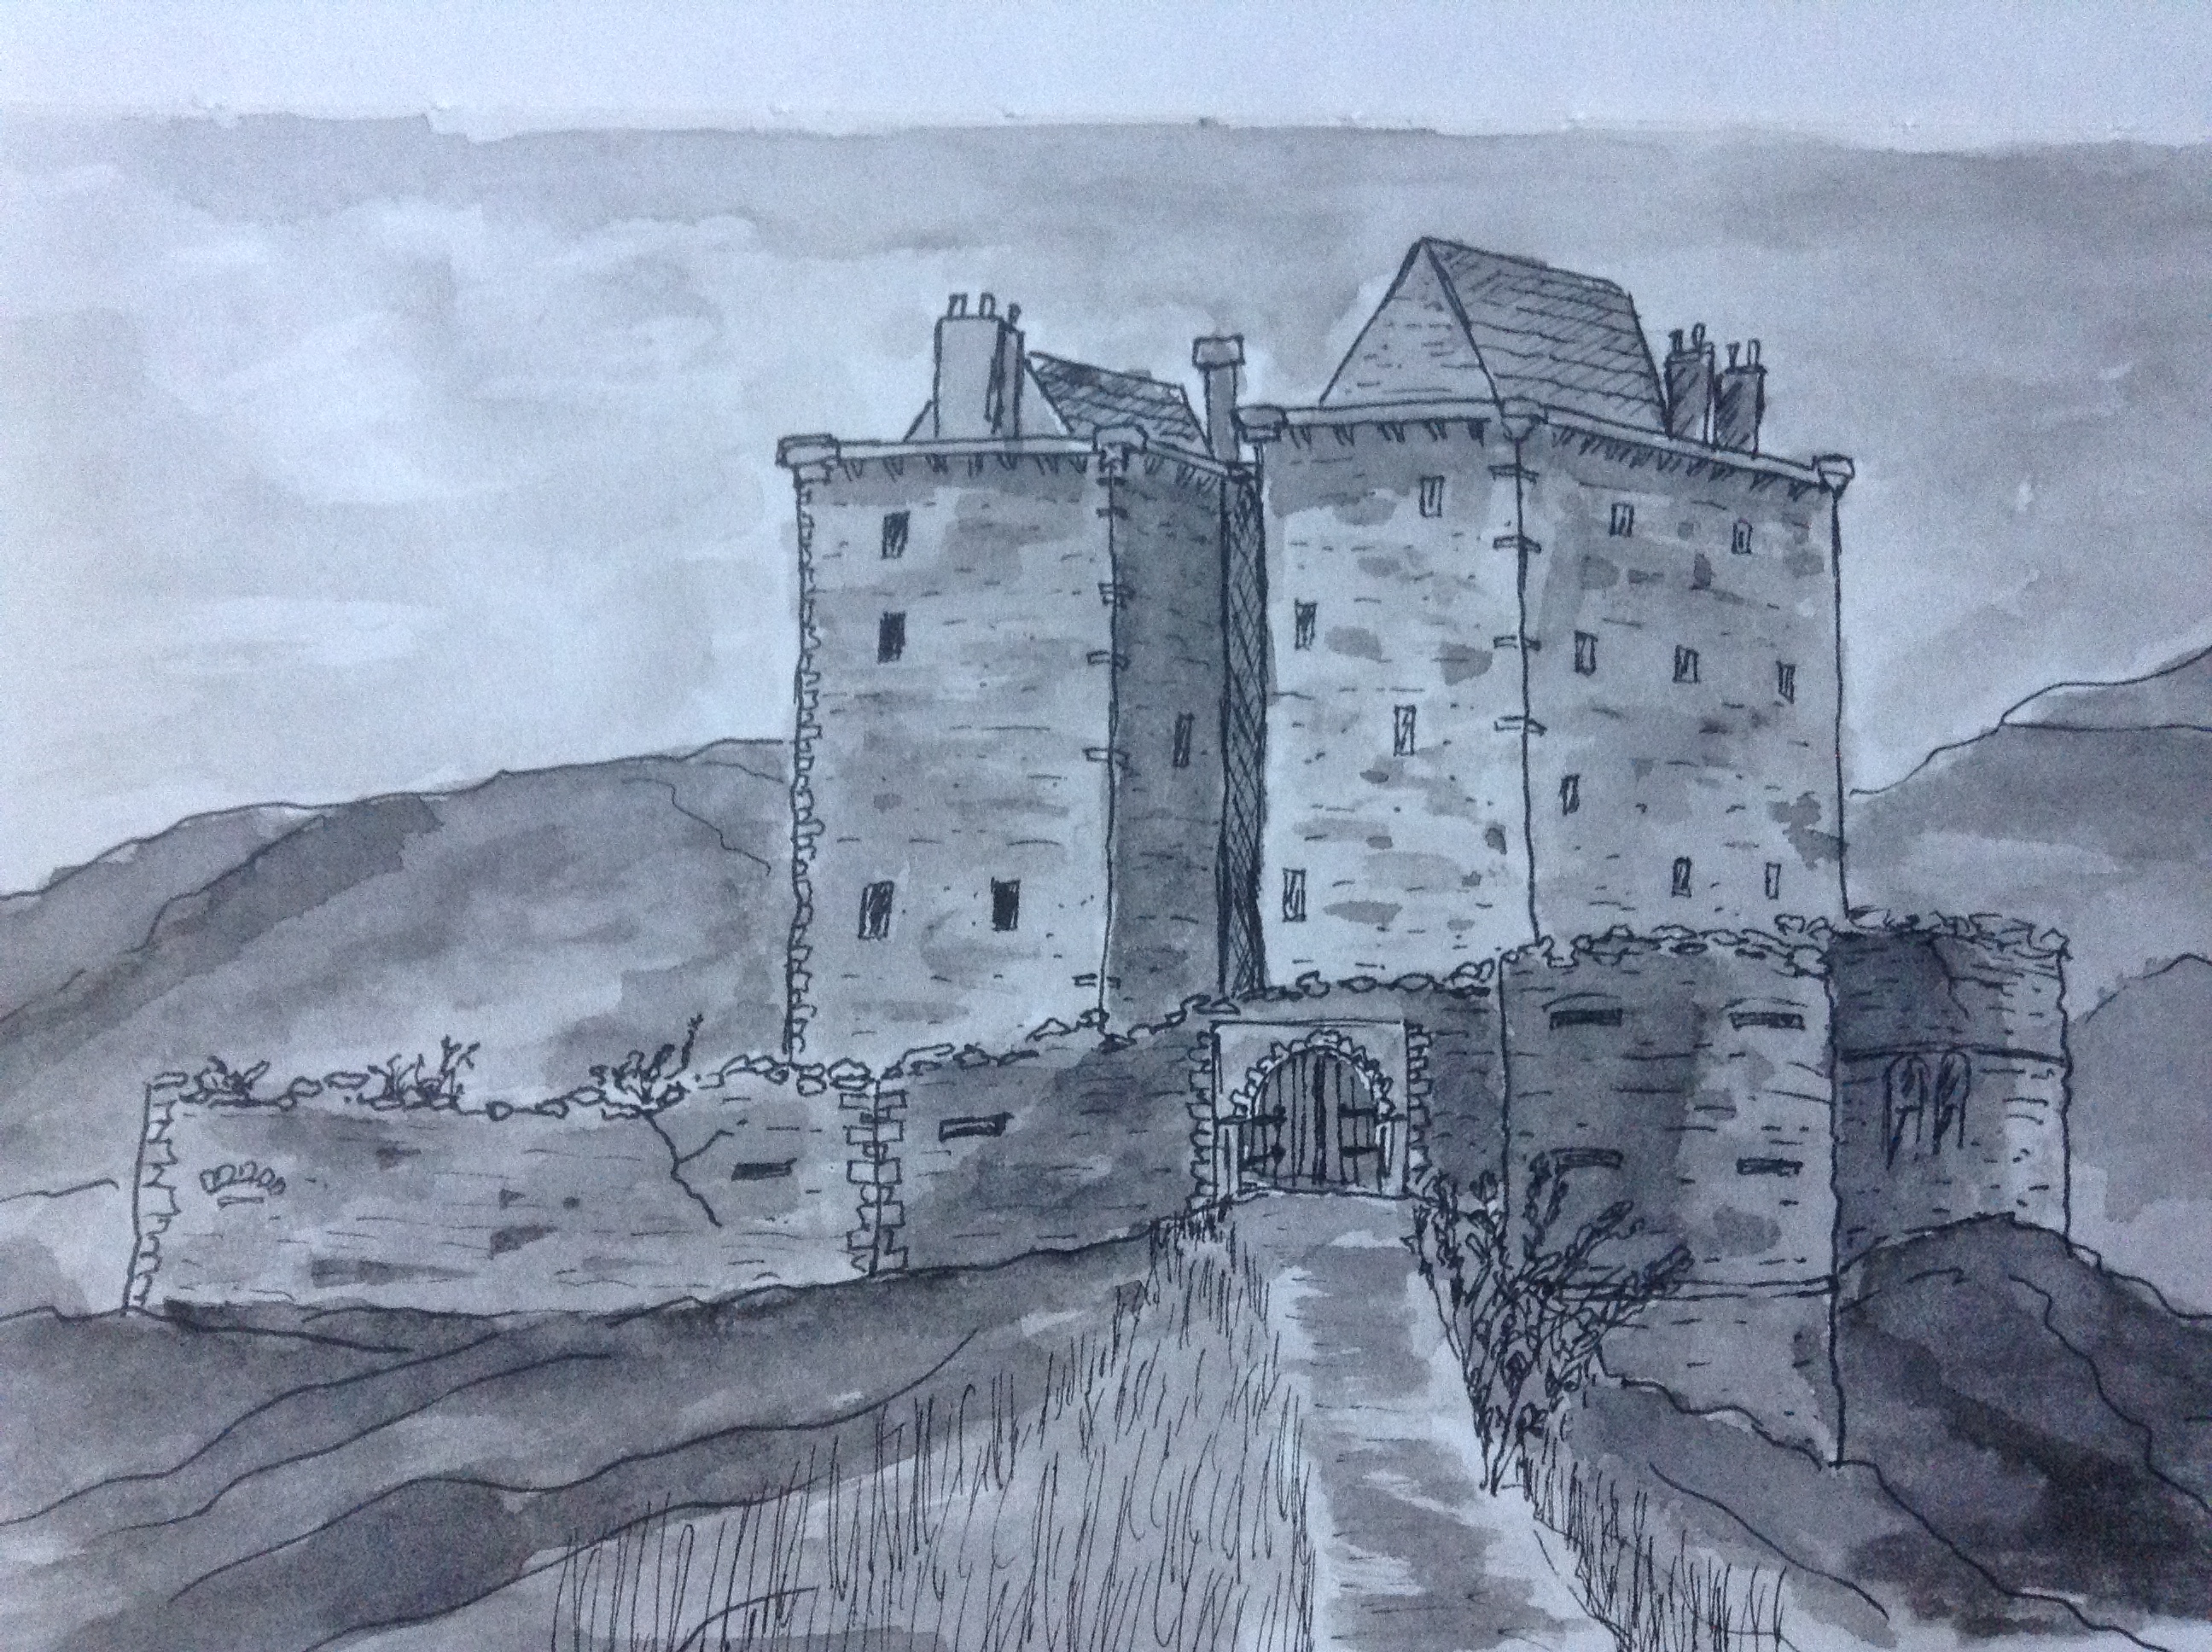 Borthwick castle at 1800’s